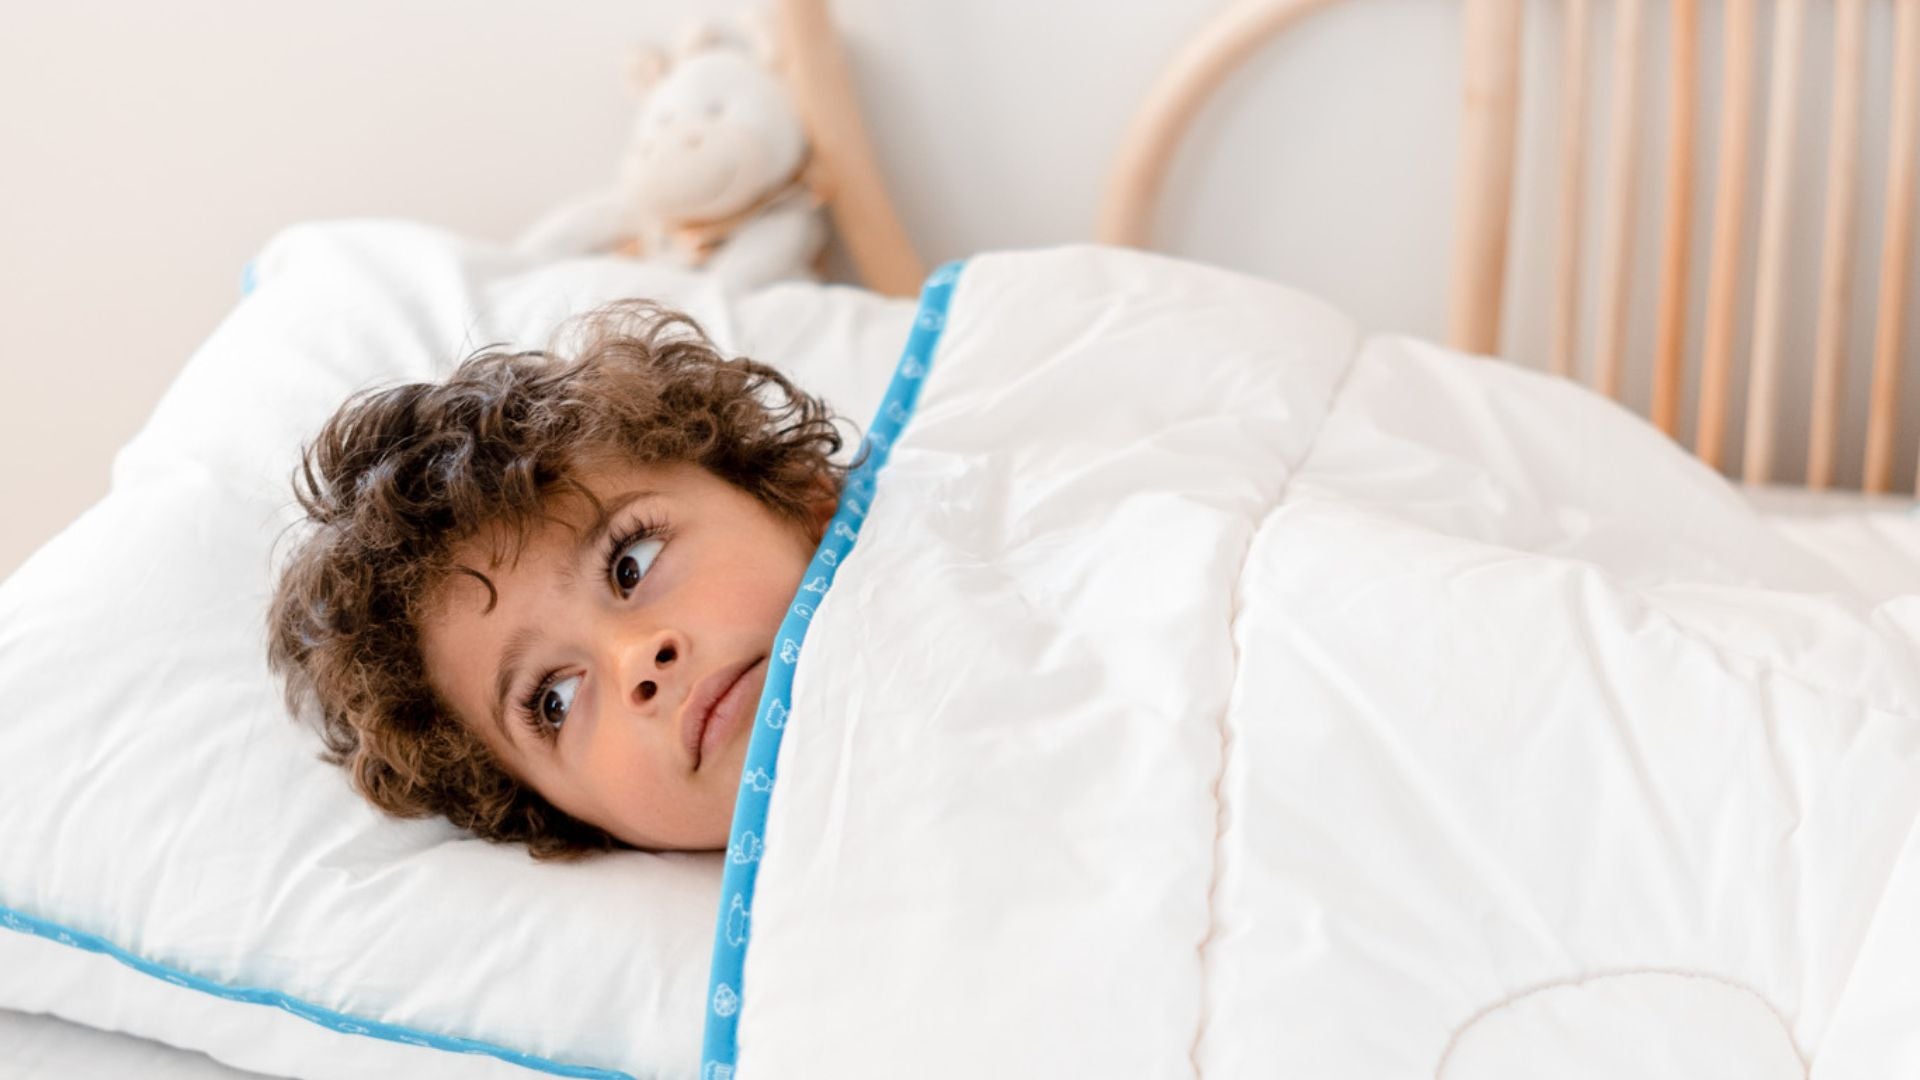 Linge de lit bébé : que choisir selon son âge ?